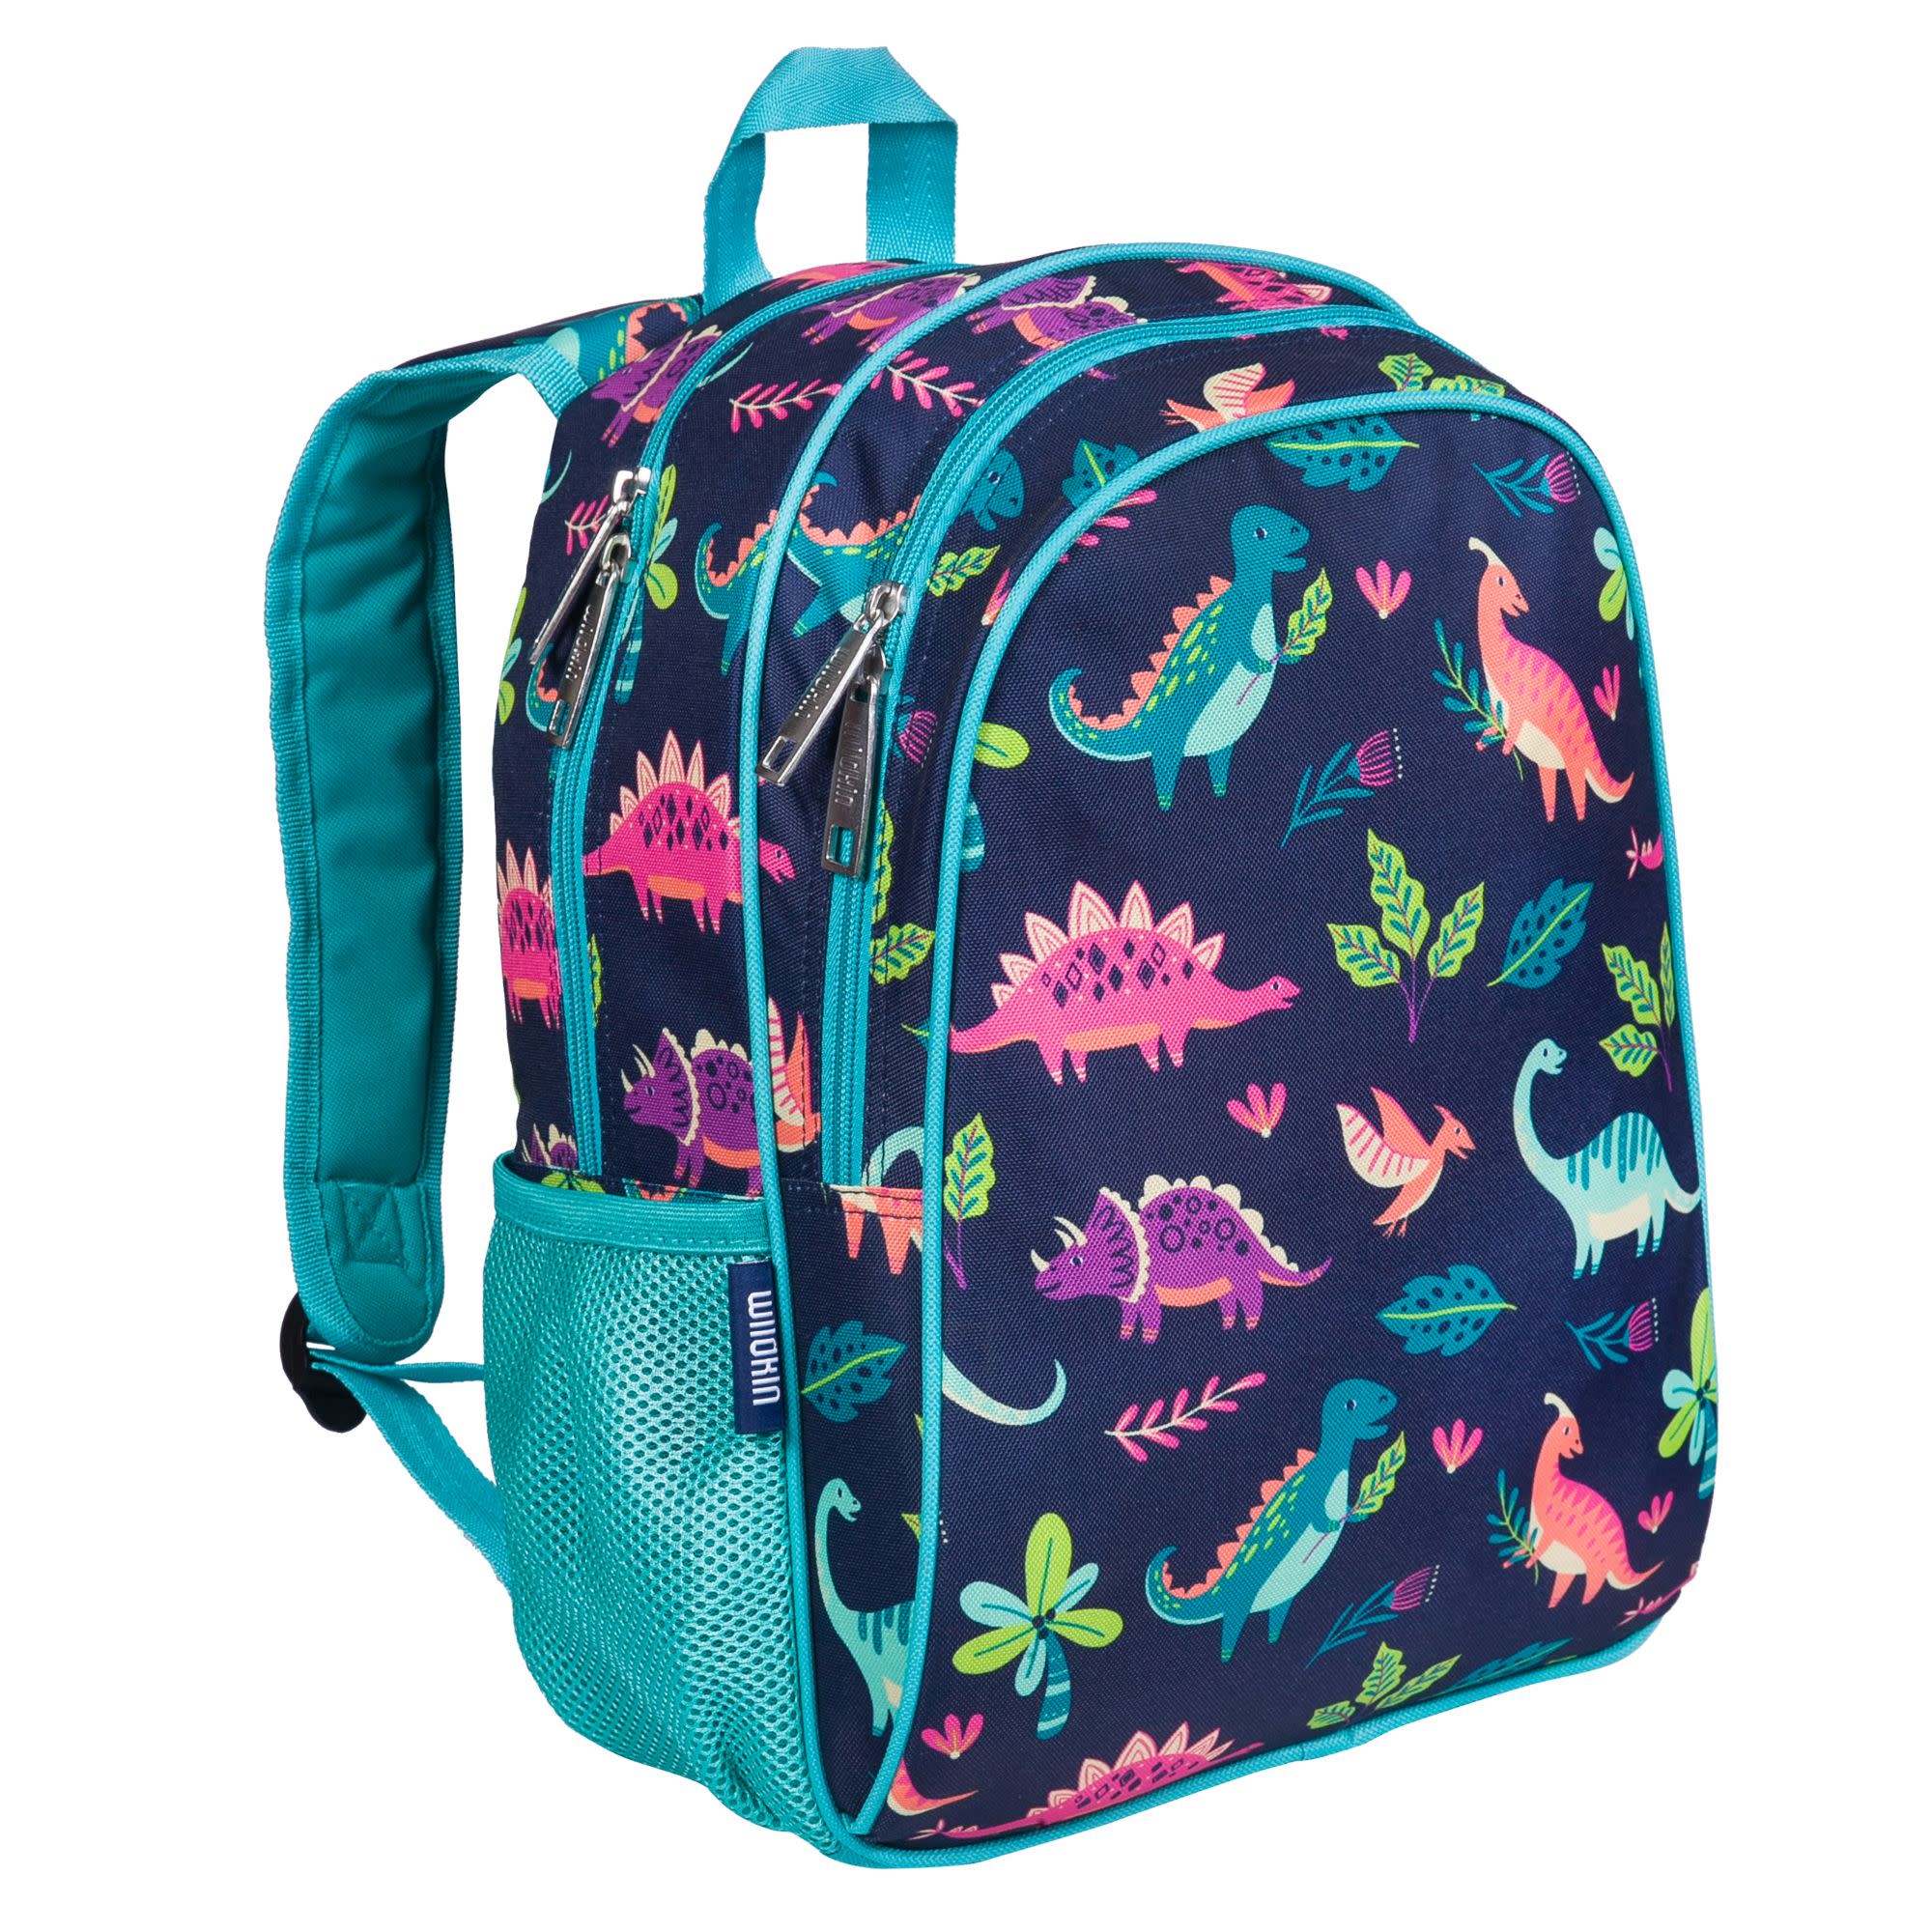 Wildkin Rainbow Hearts 15 inch Backpack